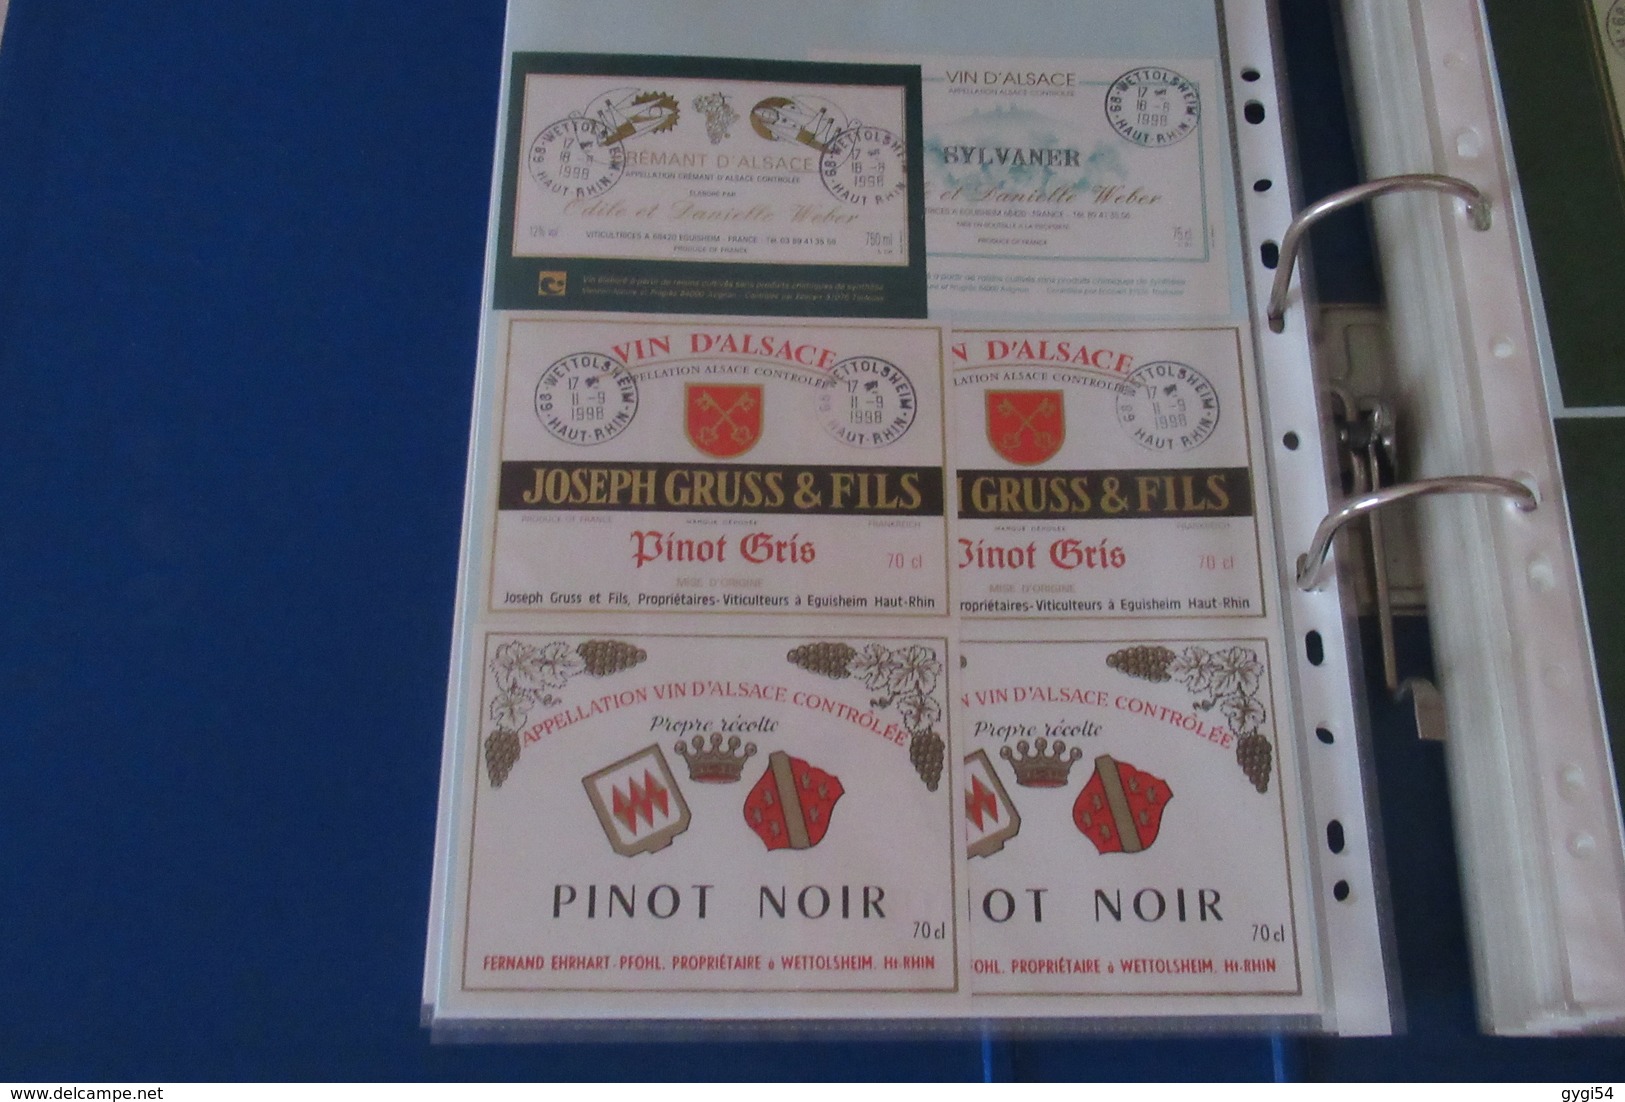 Enorme collection de 350   Etiquettes de Vins  Vins d' Alsace Rouge et Blanc